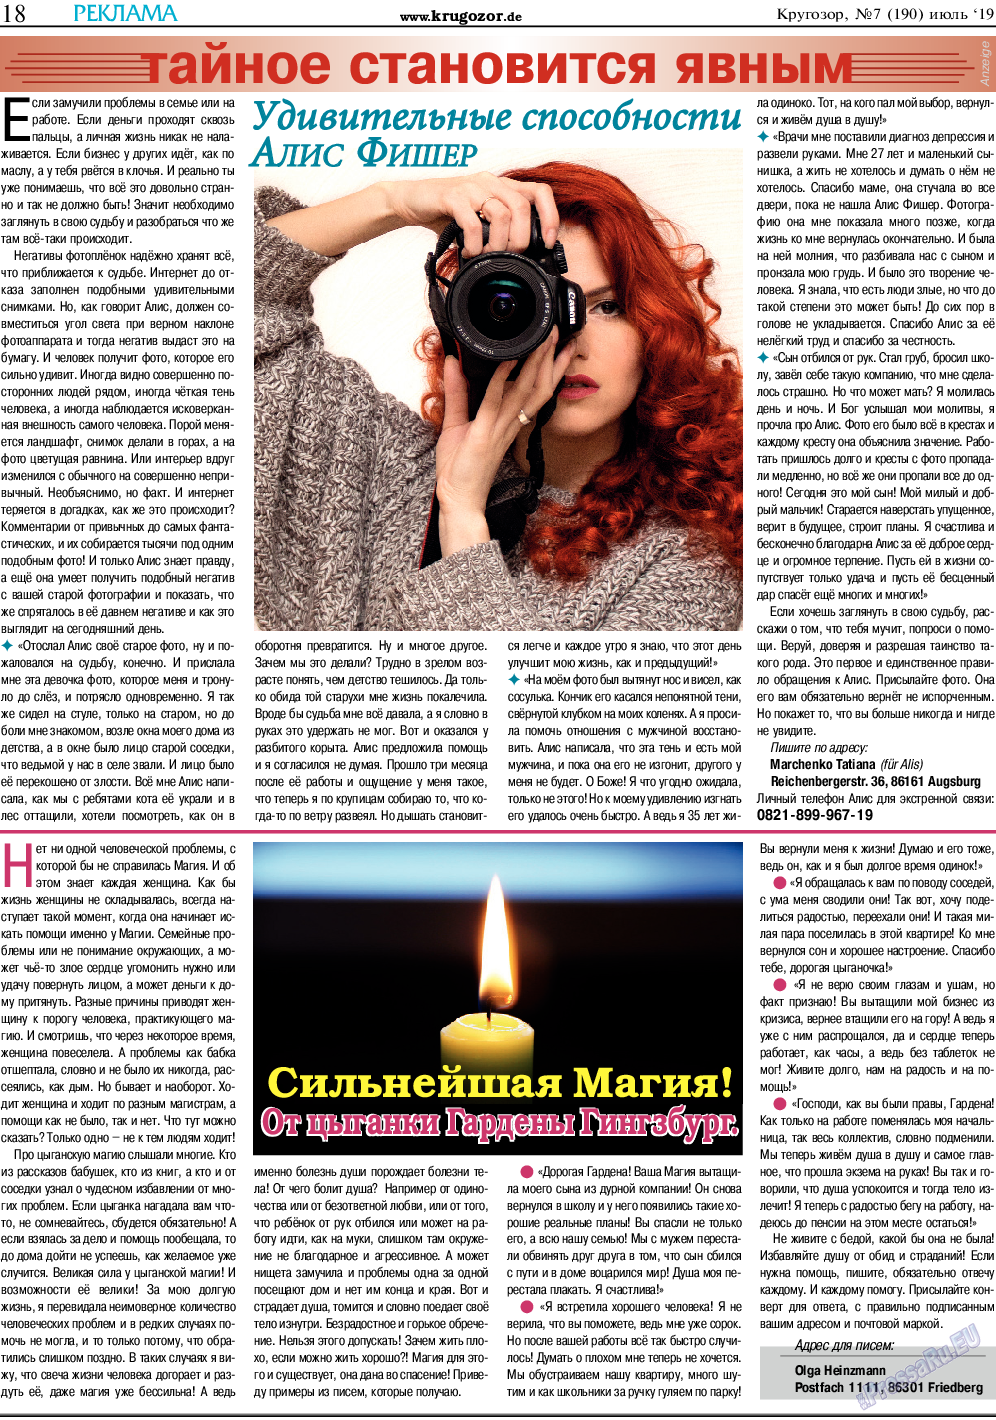 Кругозор, газета. 2019 №7 стр.18